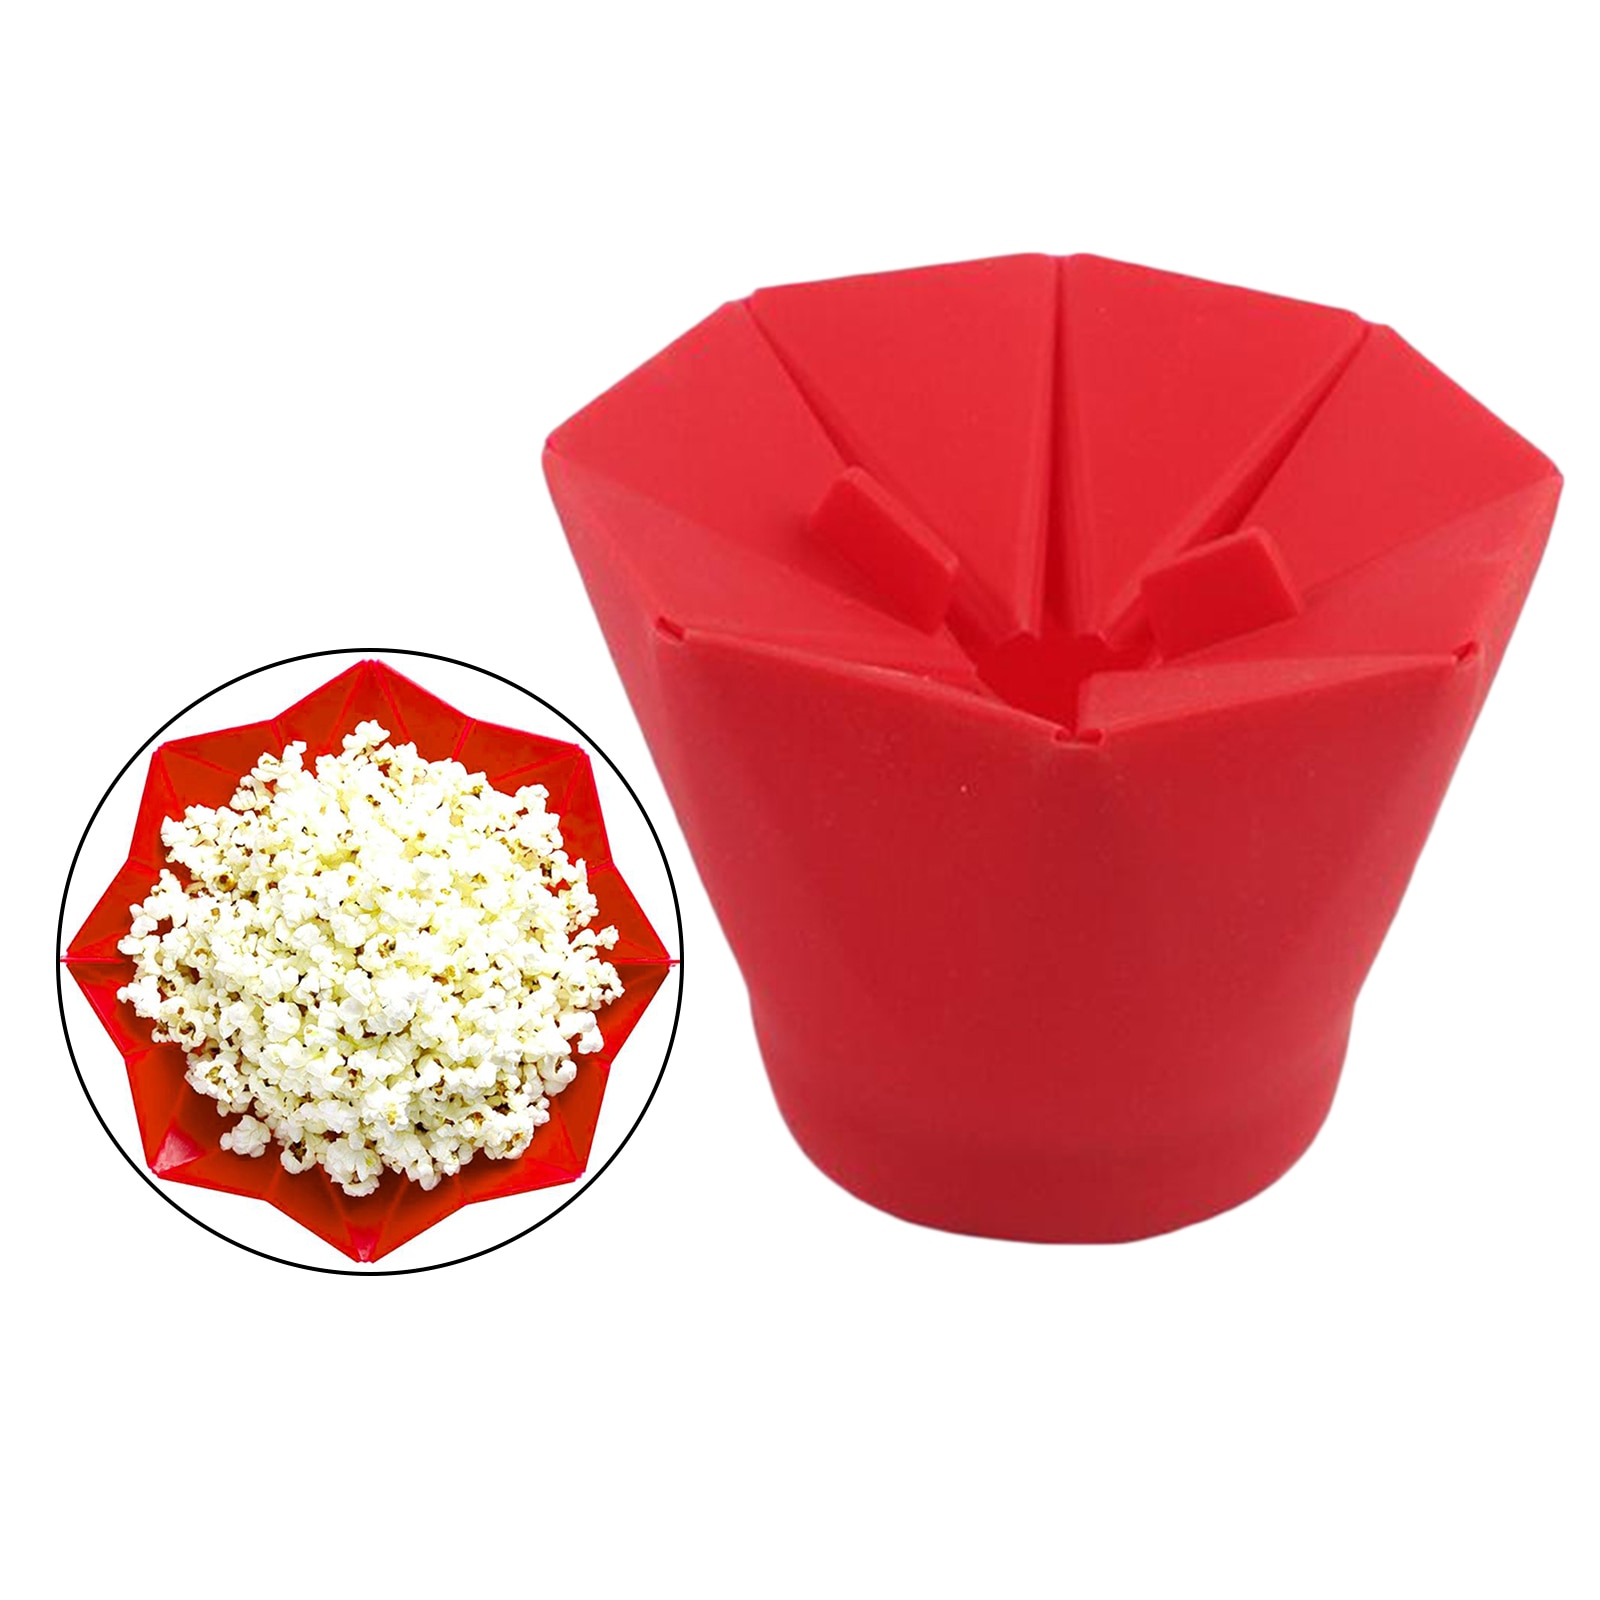 Microwave Popcorn Maker Collapsible Popcorn Baking Bowls Kitchen Gadgets Dishwasher-safe Household DIY Popcorn Popper